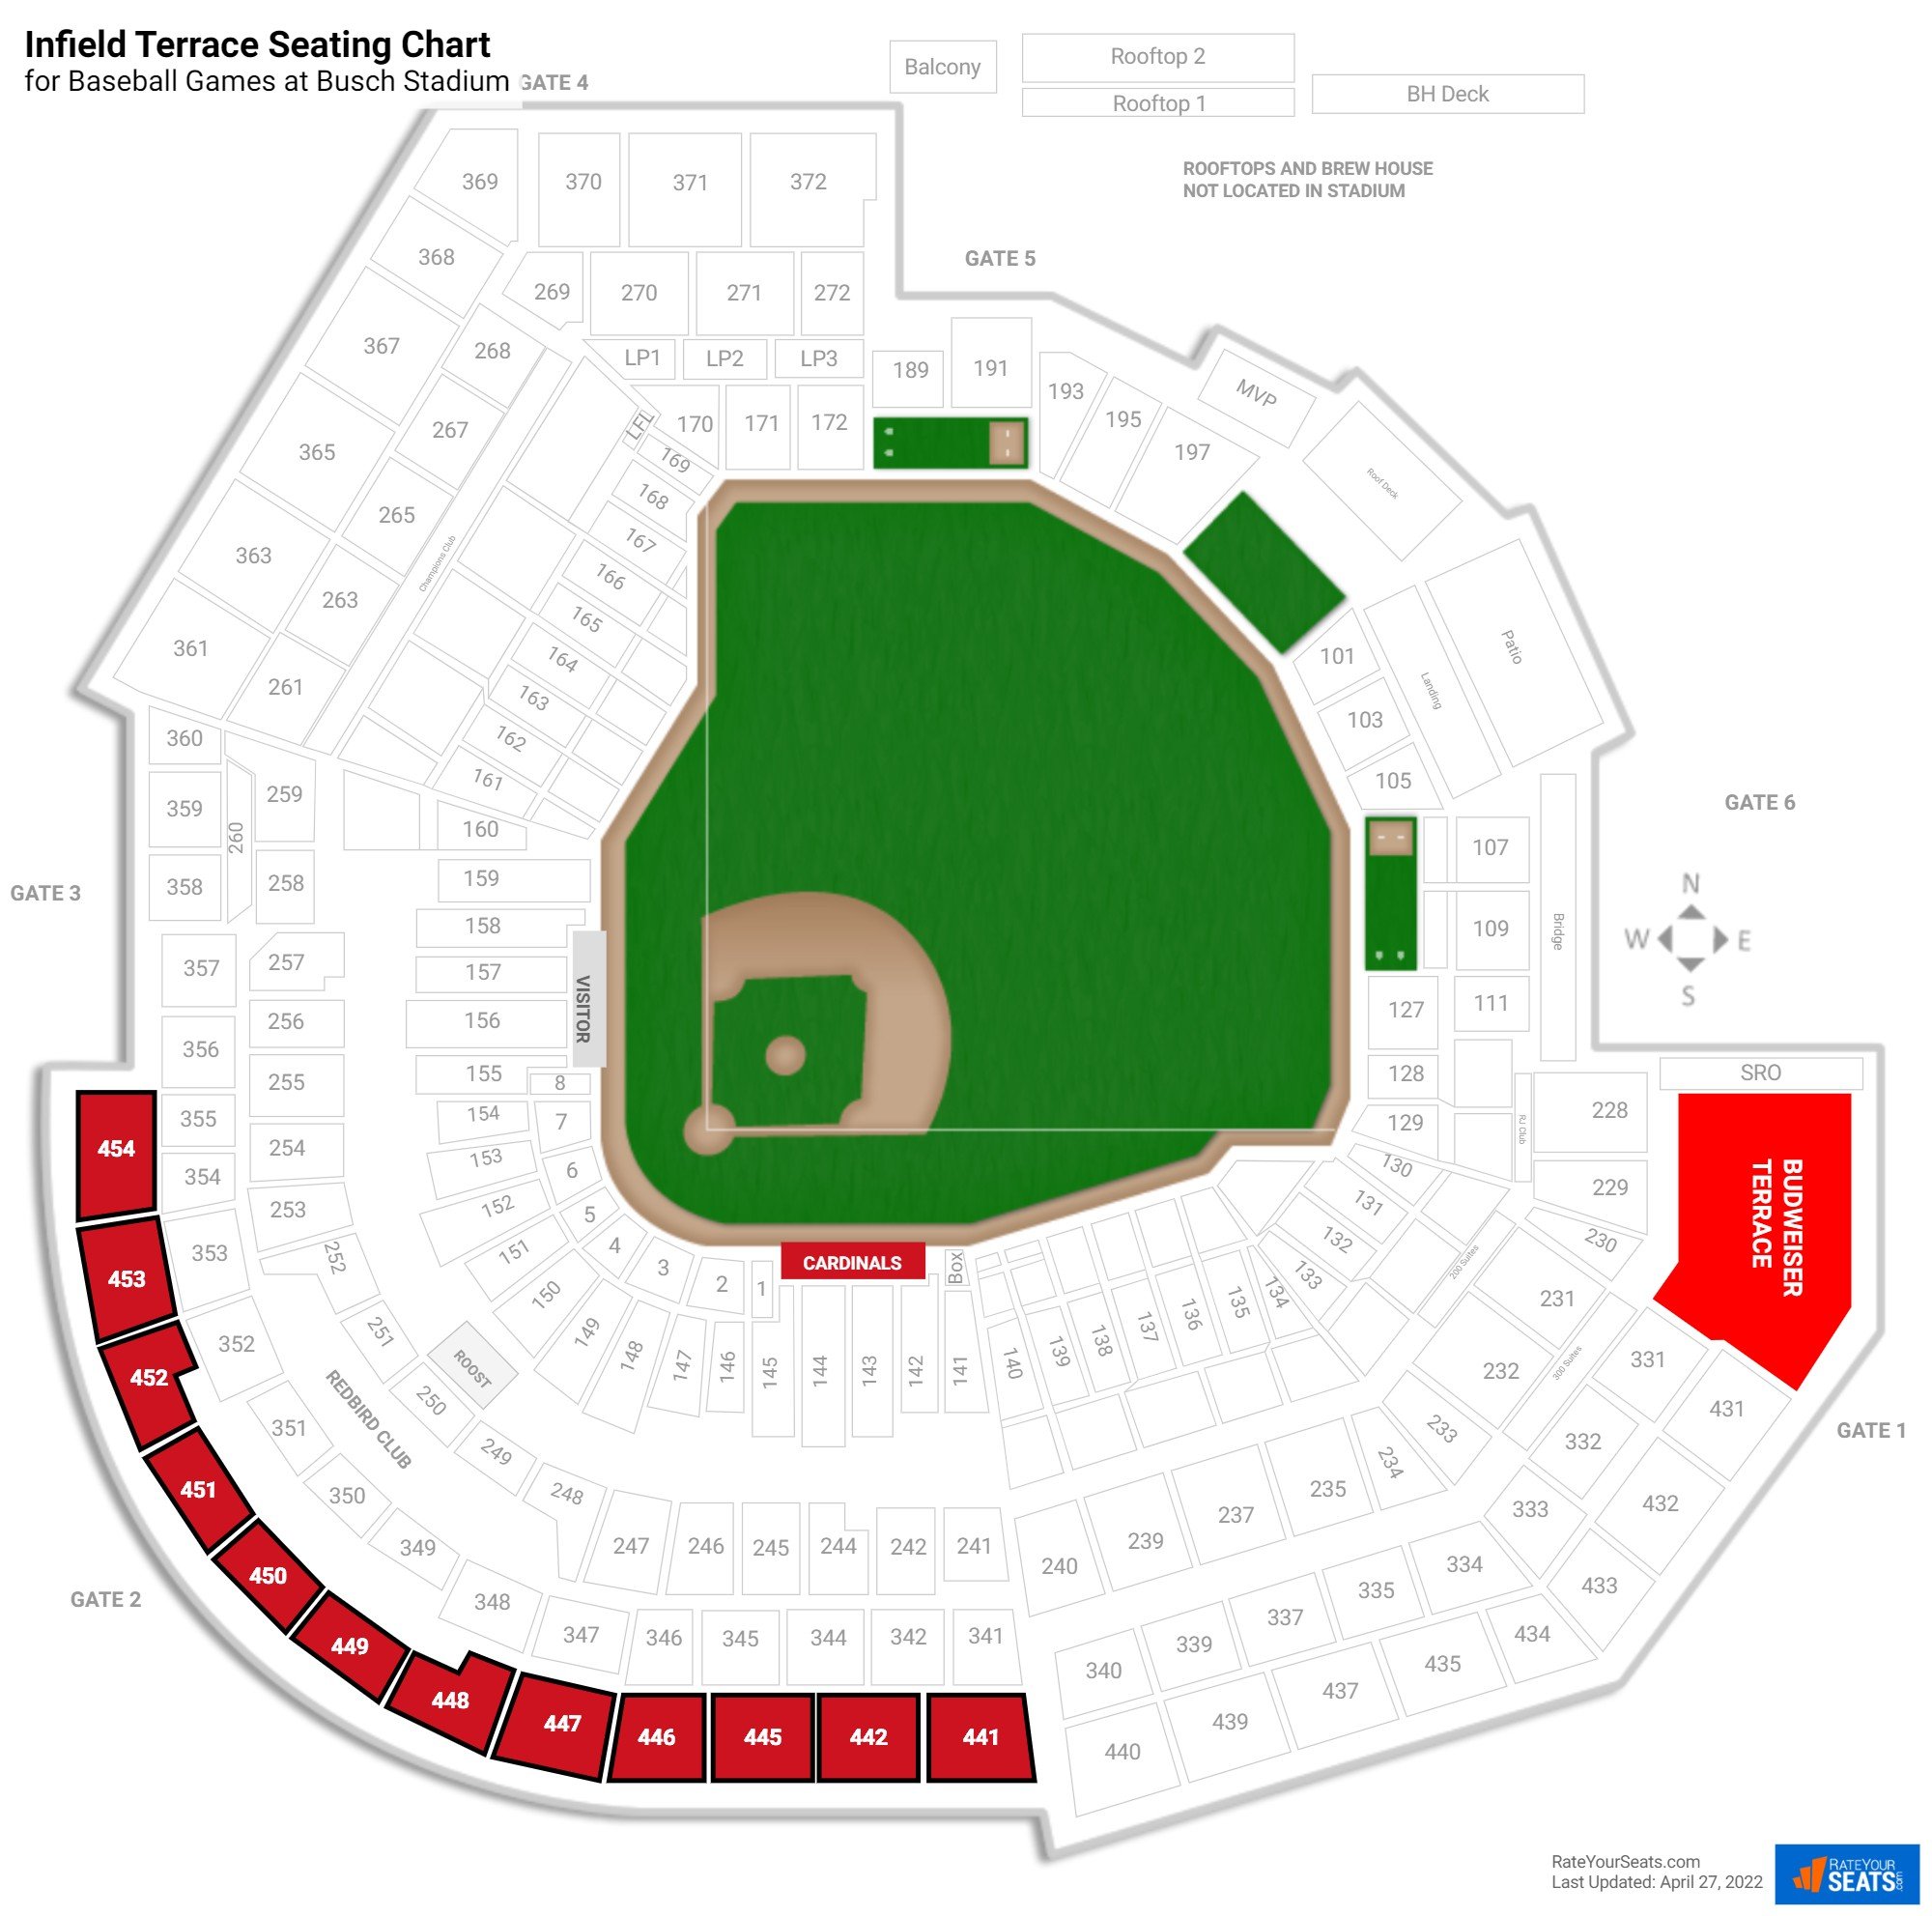 Baseball Infield Terrace Seating Chart at Busch Stadium